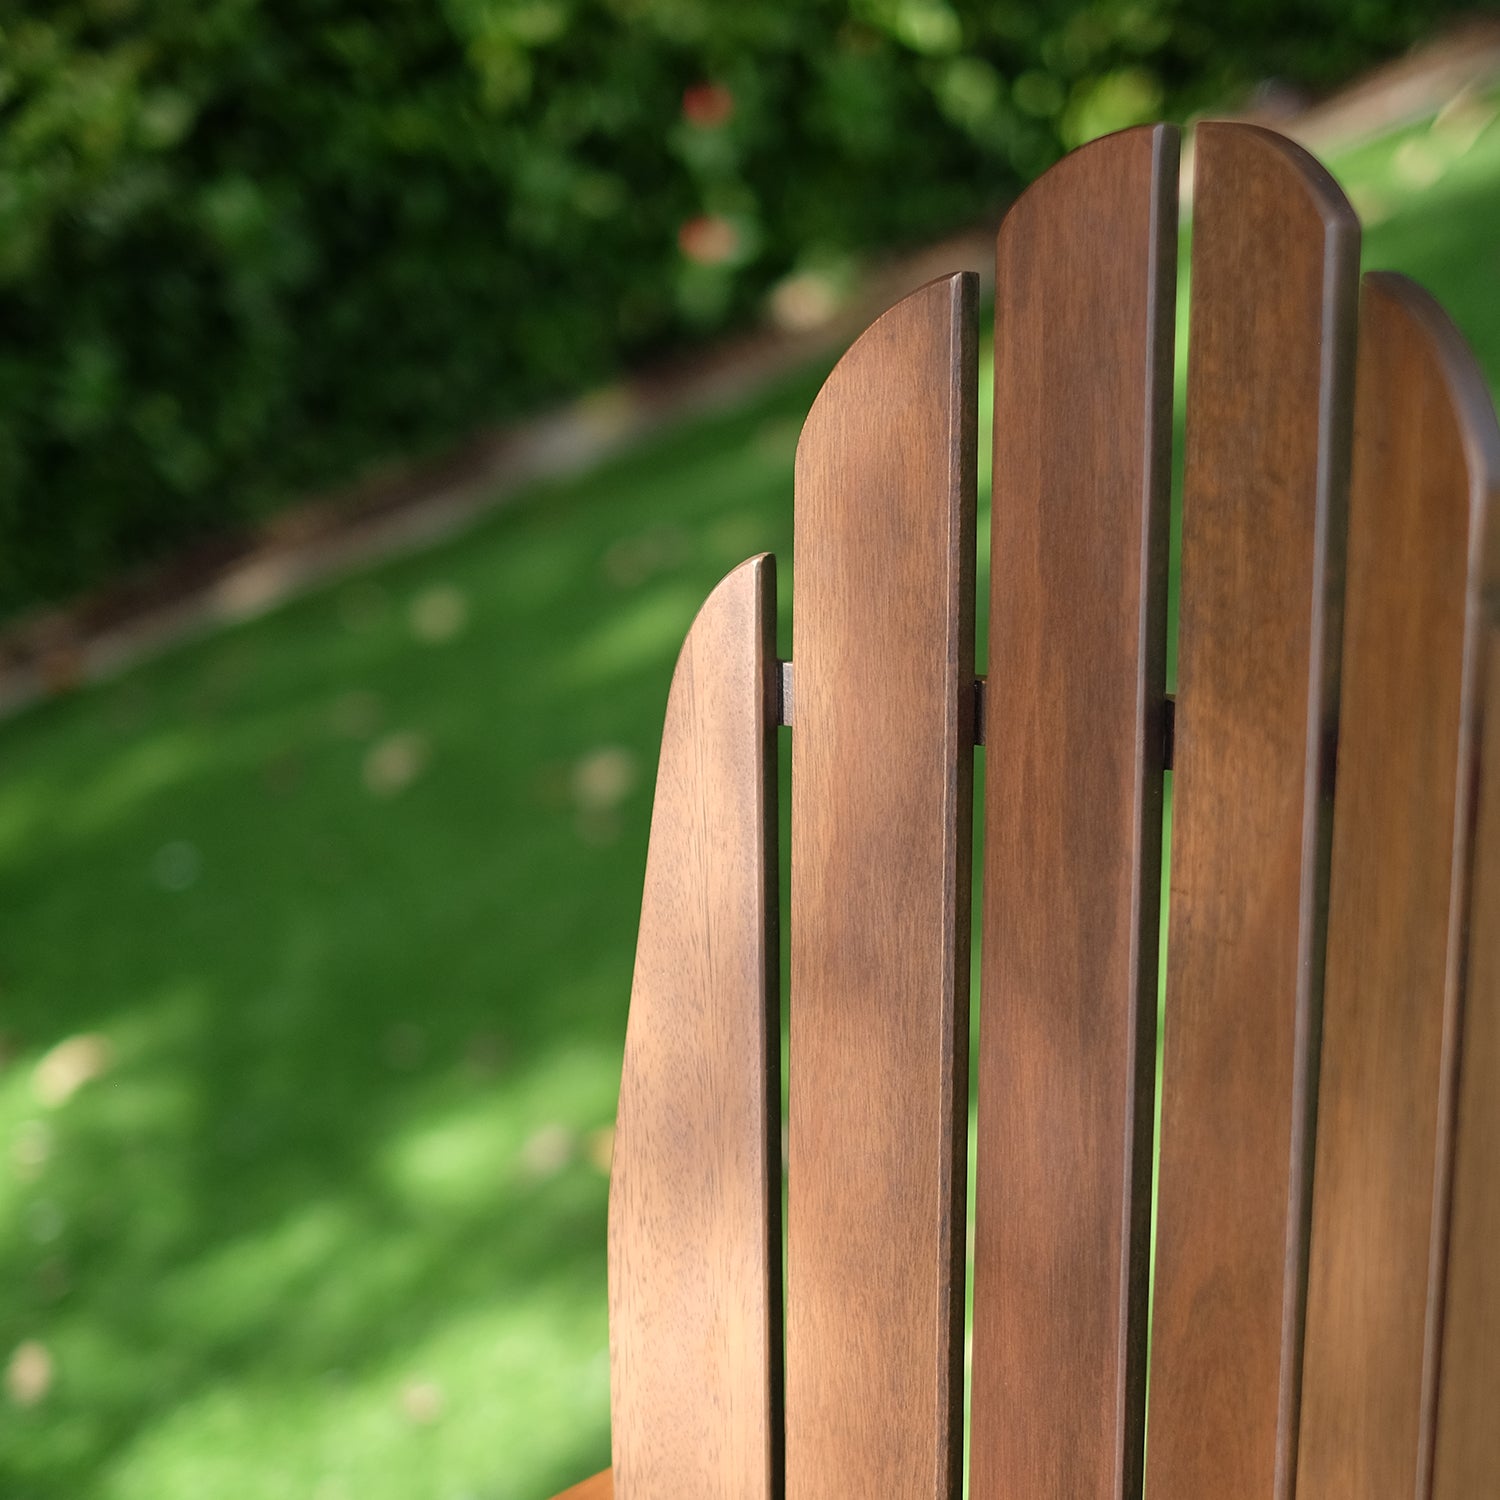 Moni Mahogany Wood Natural Brown Adirondack Chair FREE Tray Table - Cambridge Casual